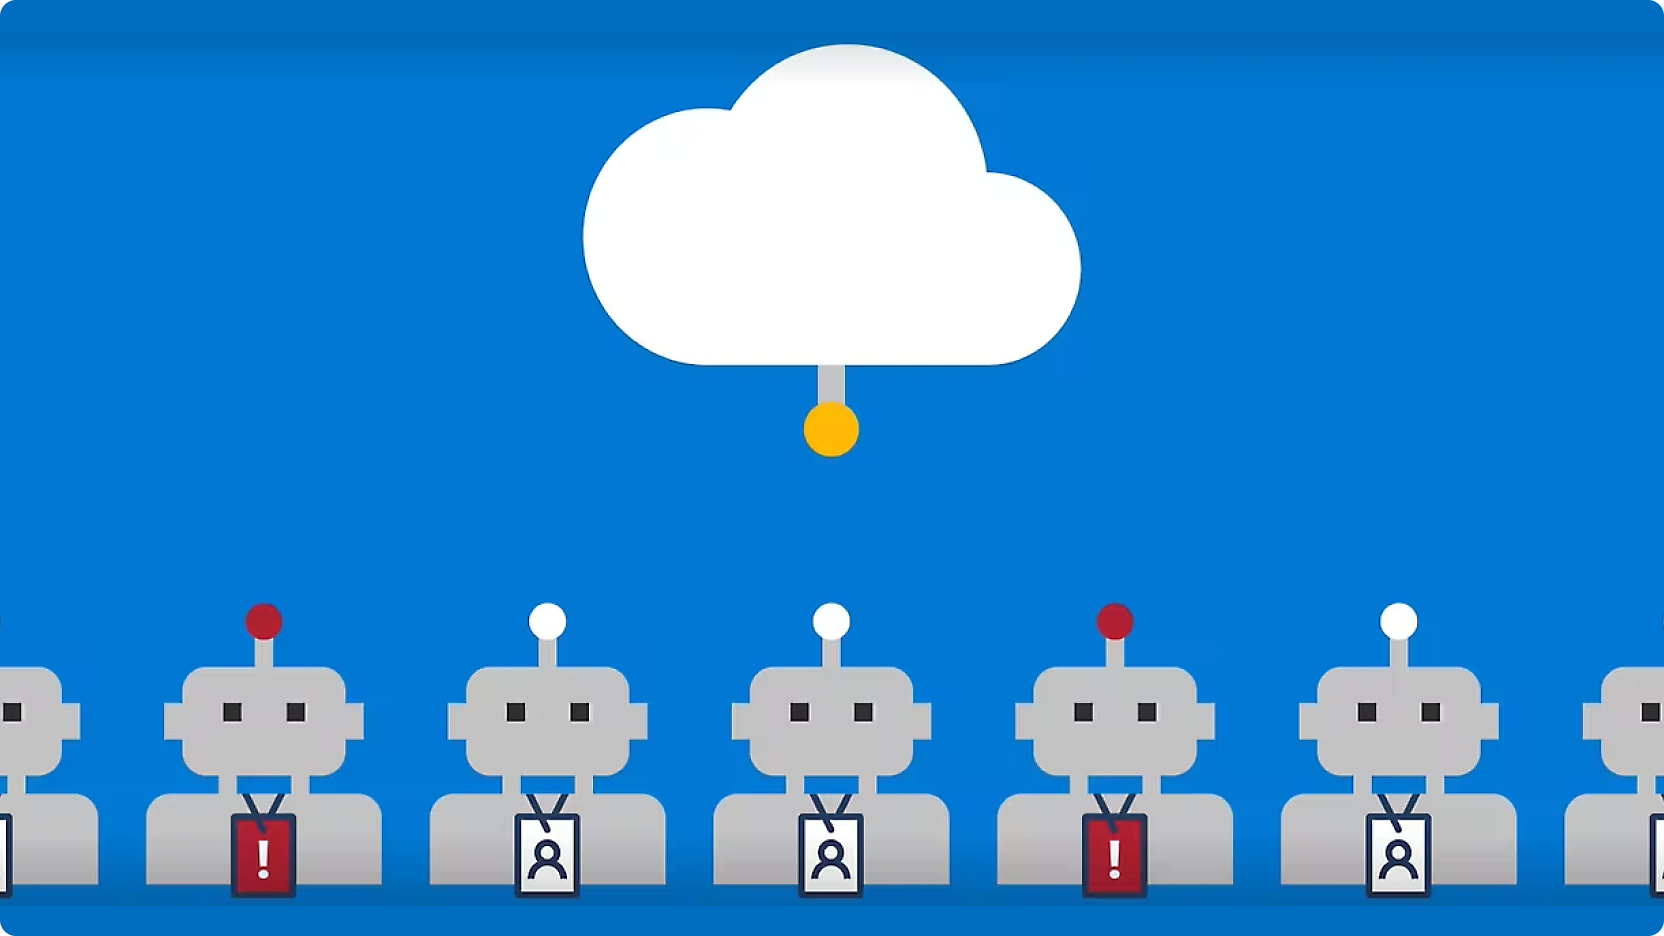 Een afbeelding van rijen robots met rode knoppen op hun hoofd, verbonden door lijnen met een centrale wolk